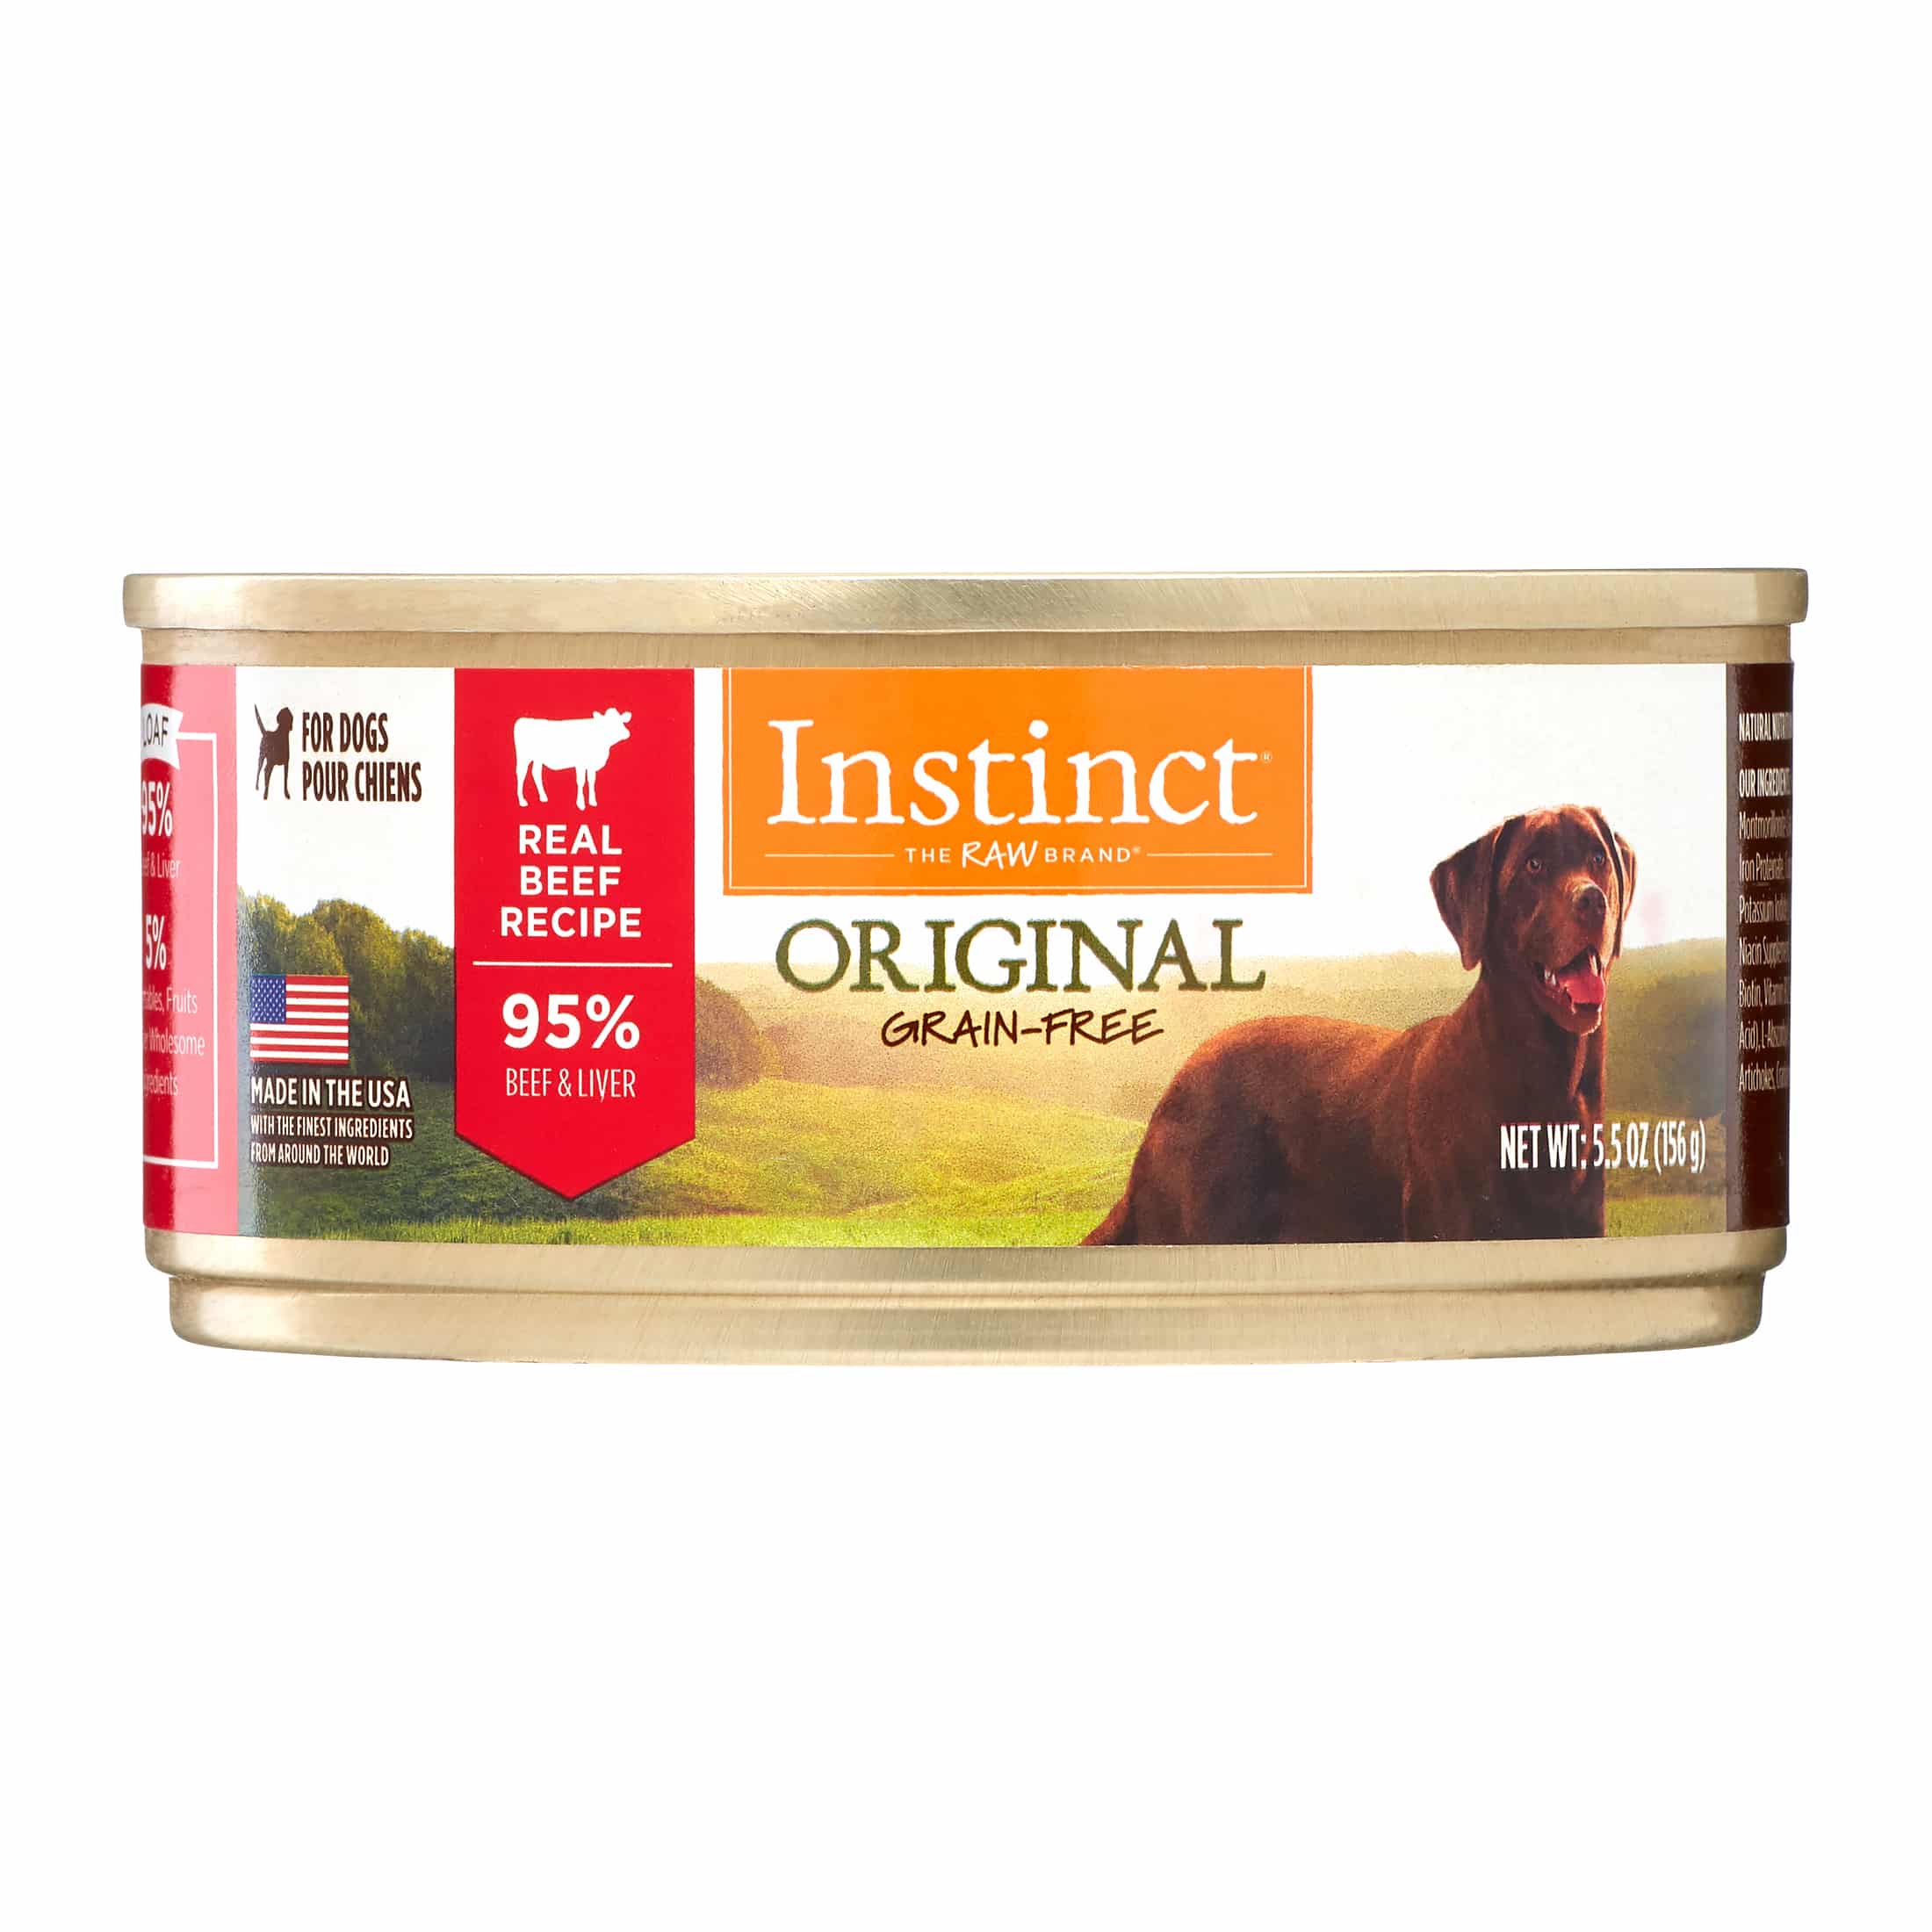 Instinct Original Grain